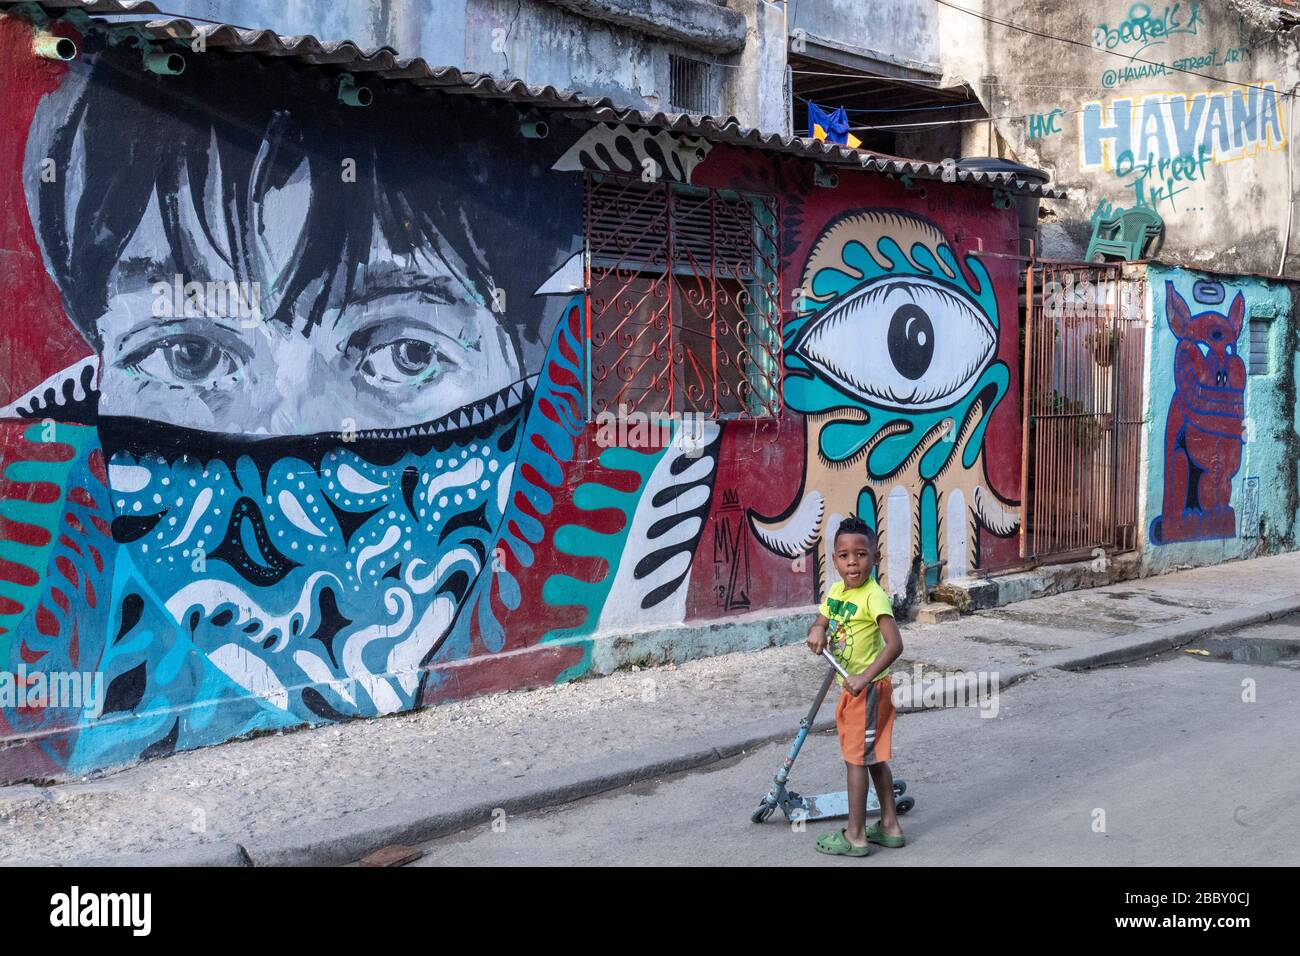 Boy walking by street art mural, Old Havana Stock Photo